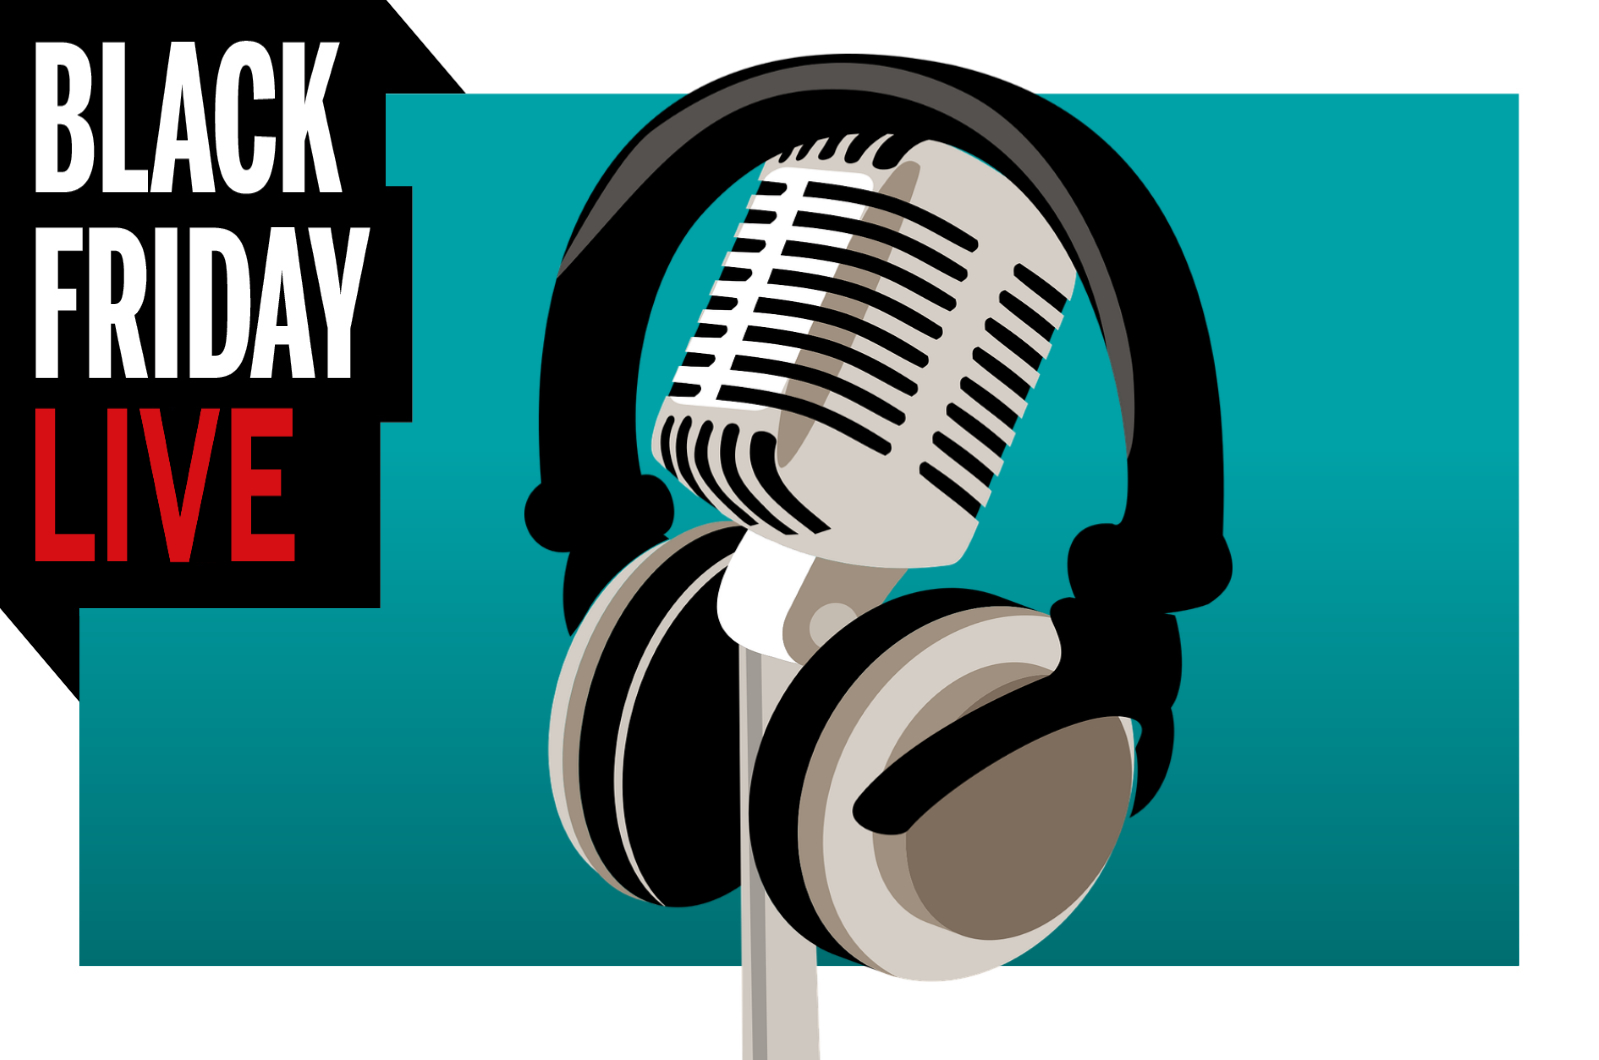  Black Friday deals - LIVE! 